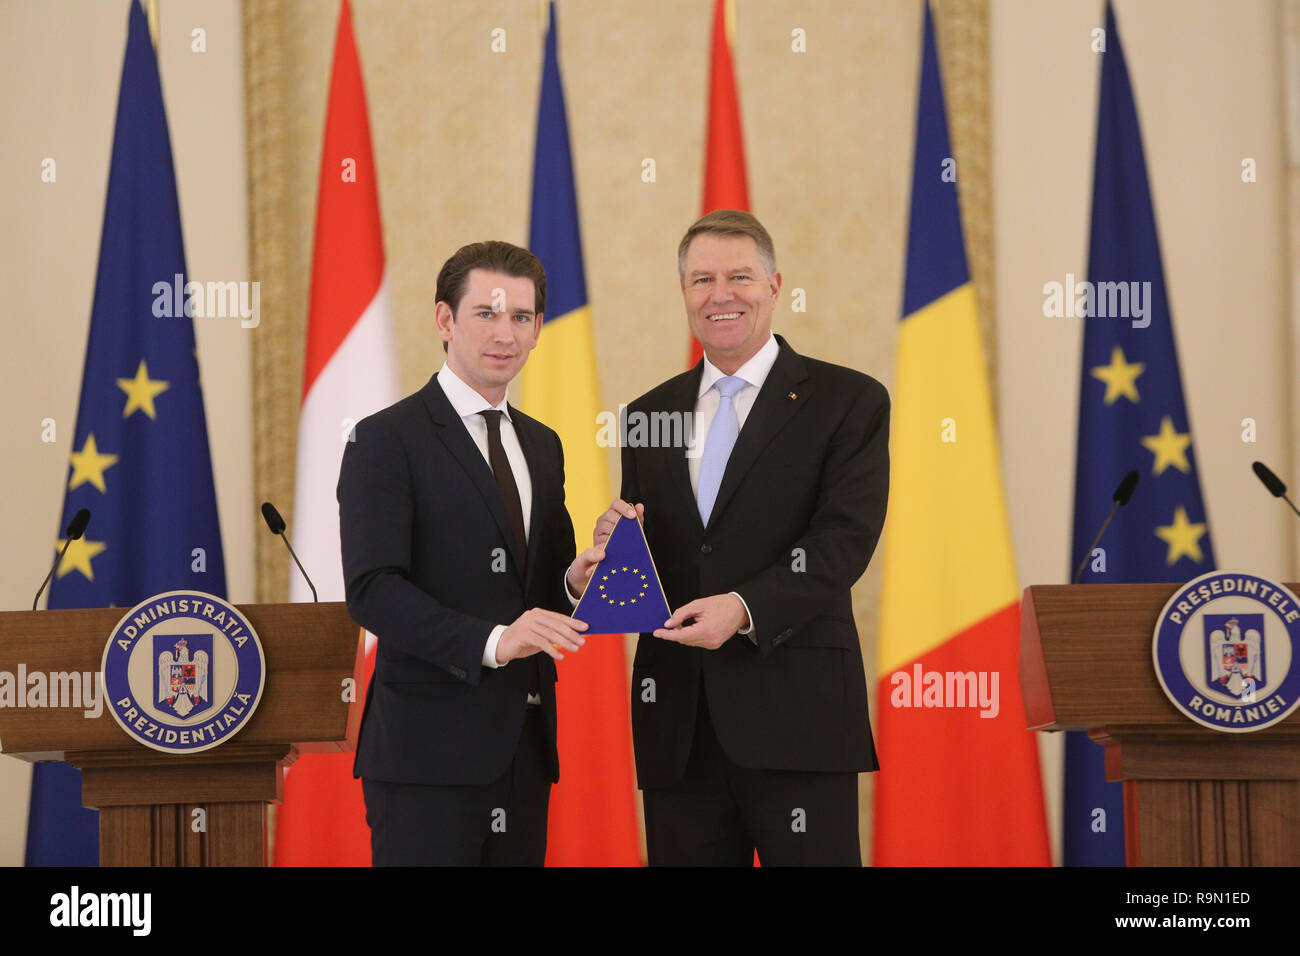 Bukarest, Rumänien - Dezember 21, 2018: Der österreichische Kanzler Sebastian Kurz, Links, schüttelt Hände, während eine EU-Flagge mit dem rumänischen Präsident Klaus ICH Stockfoto